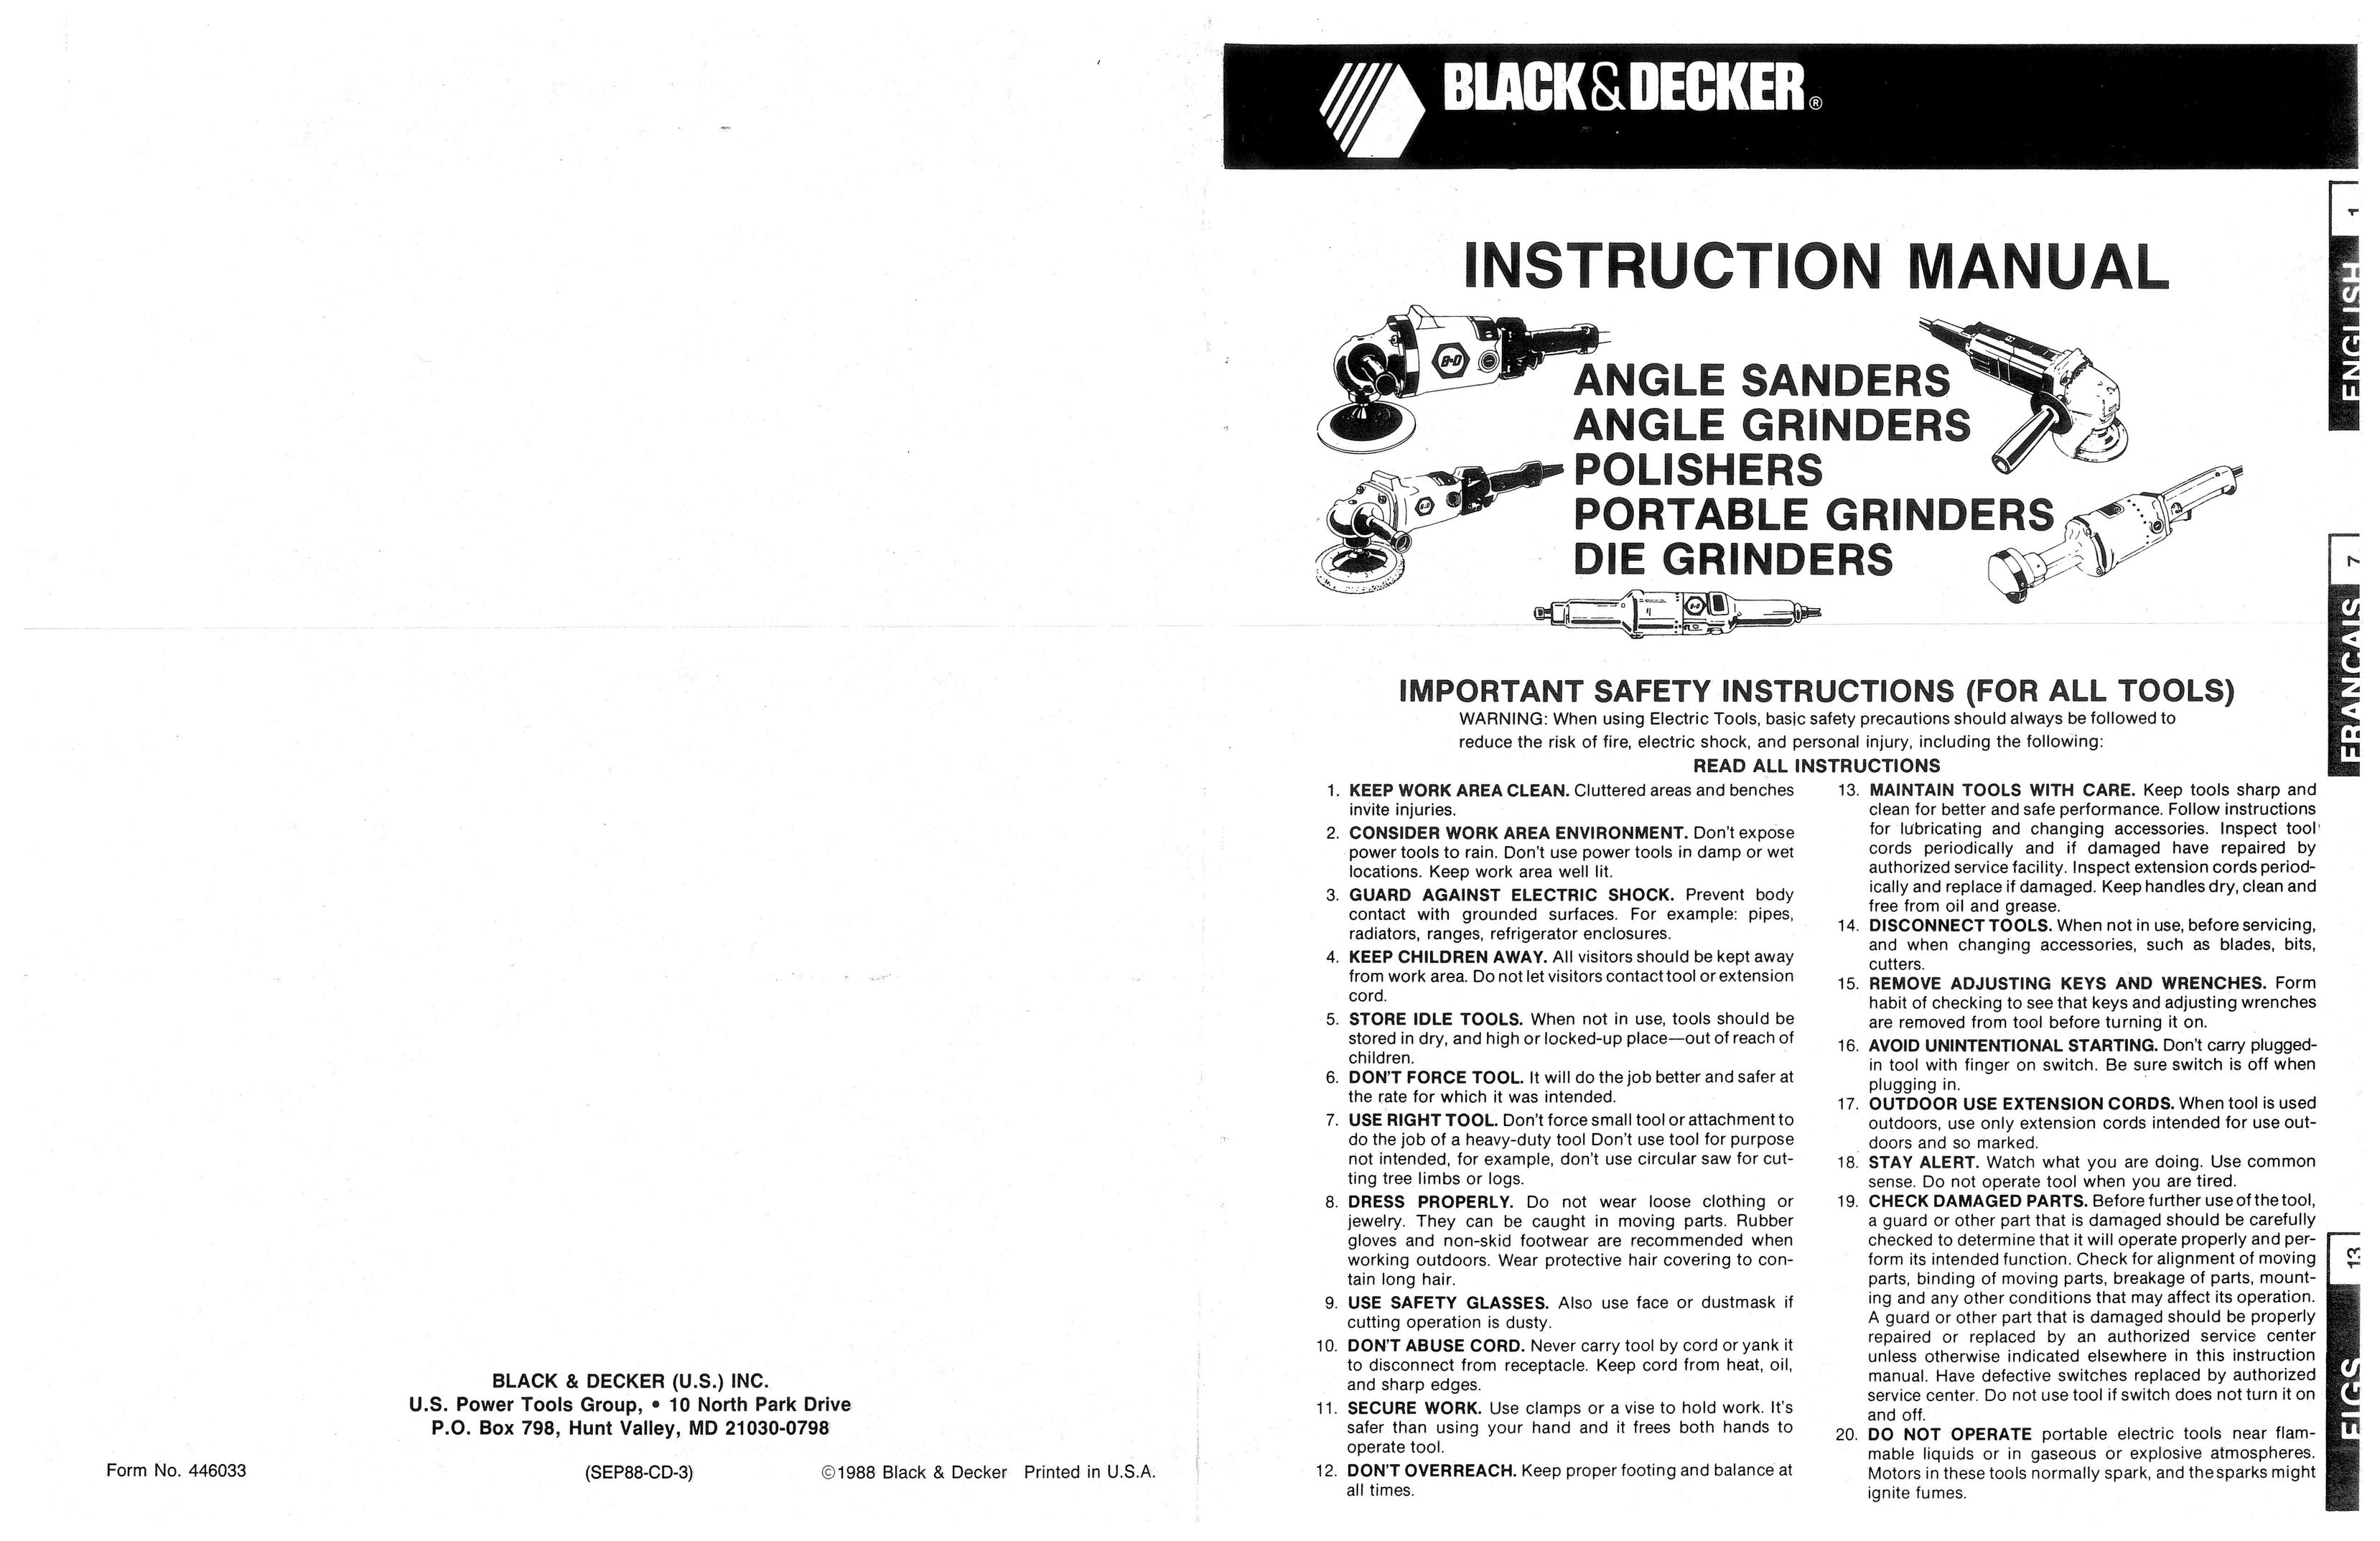 Black & Decker 446033 Grinder User Manual